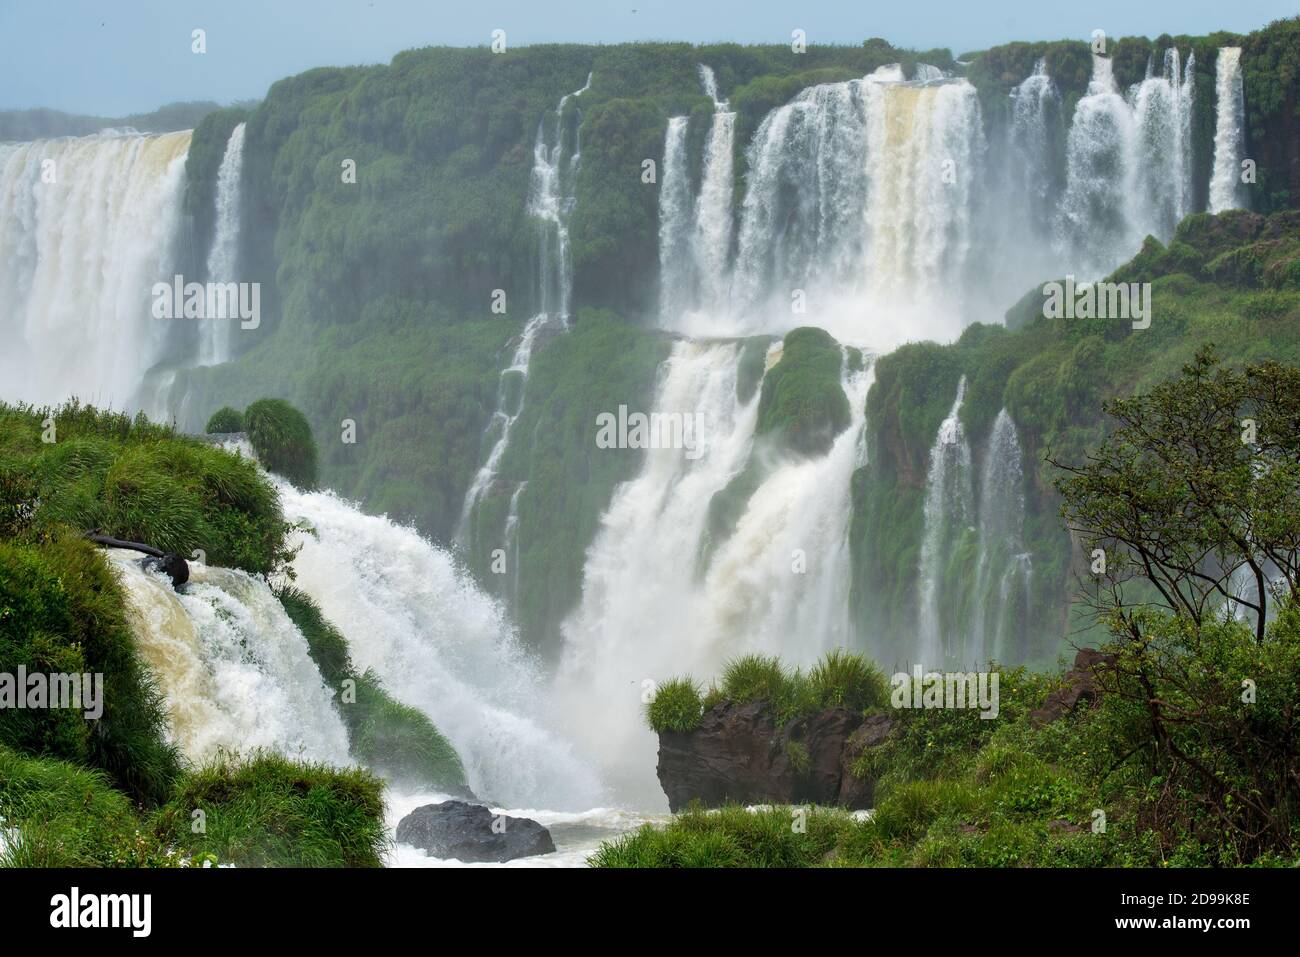 Chutes d'Iguazu, l'une des sept nouvelles merveilles de la nature, au Brésil et en Argentine Banque D'Images